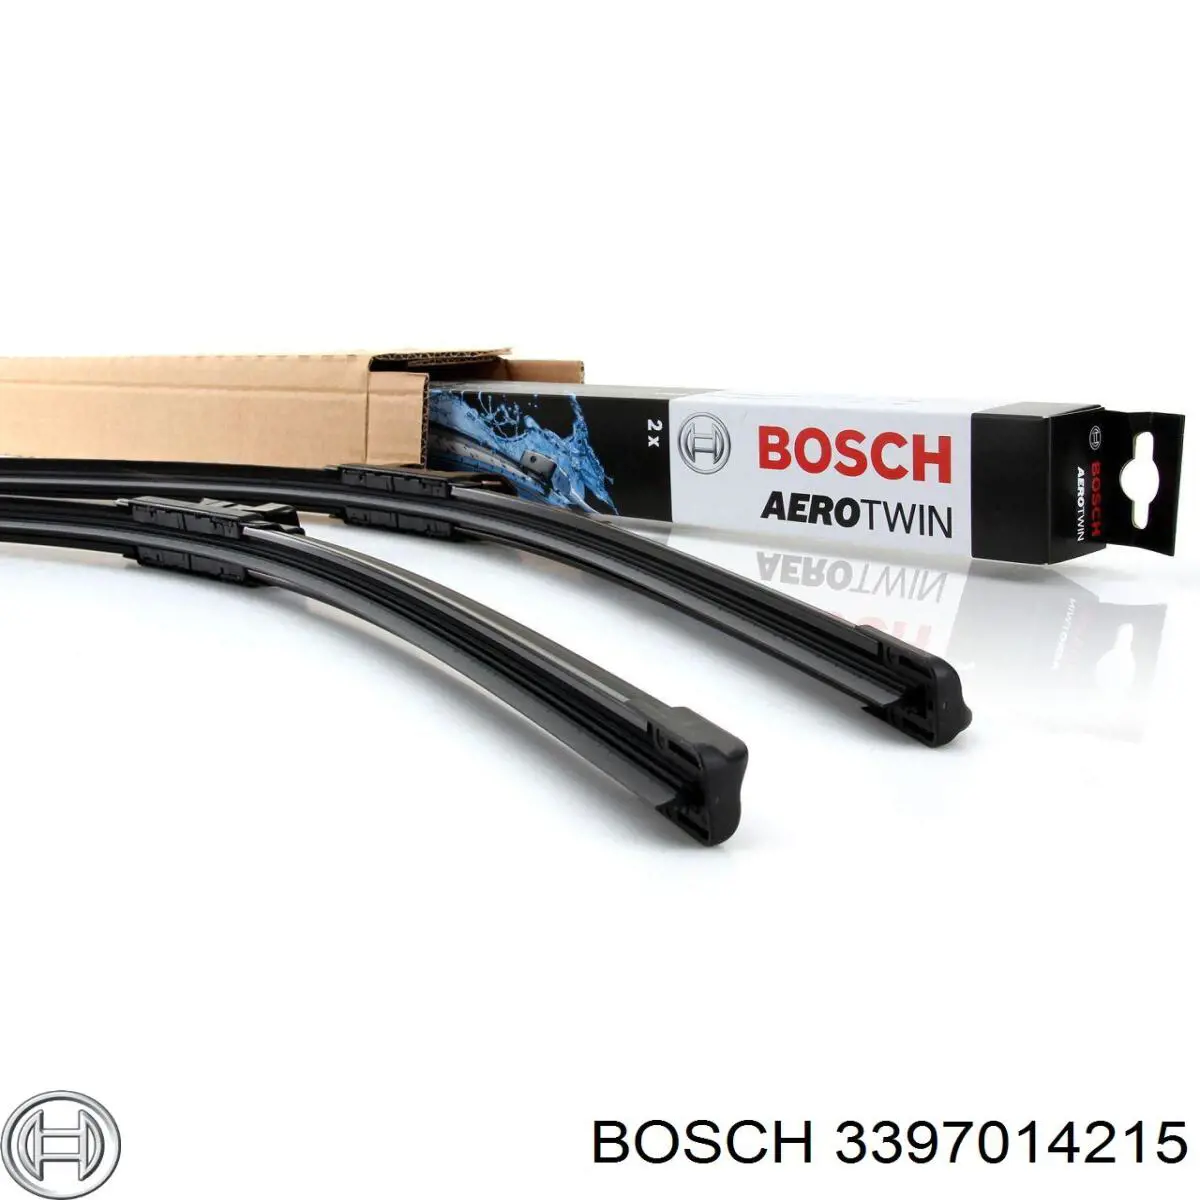 3397014215 Bosch limpiaparabrisas